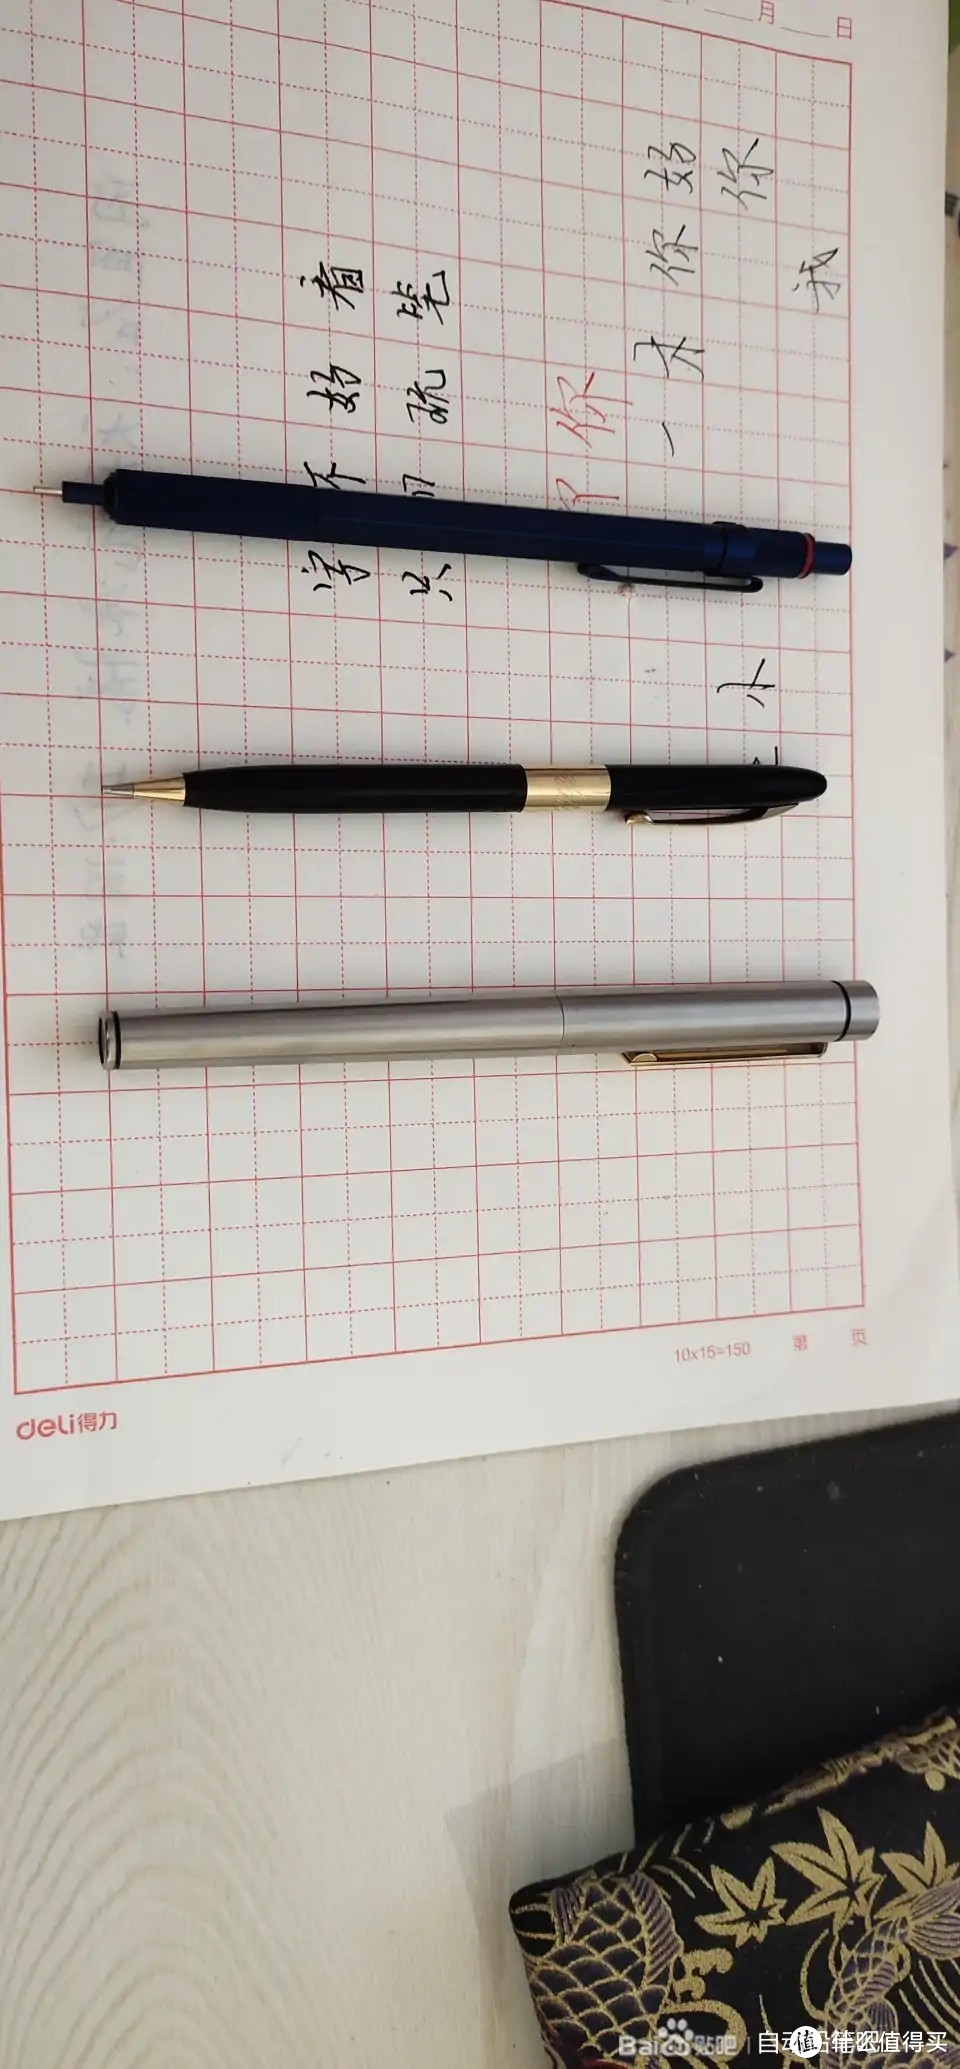 潜艇手迹机械铅笔